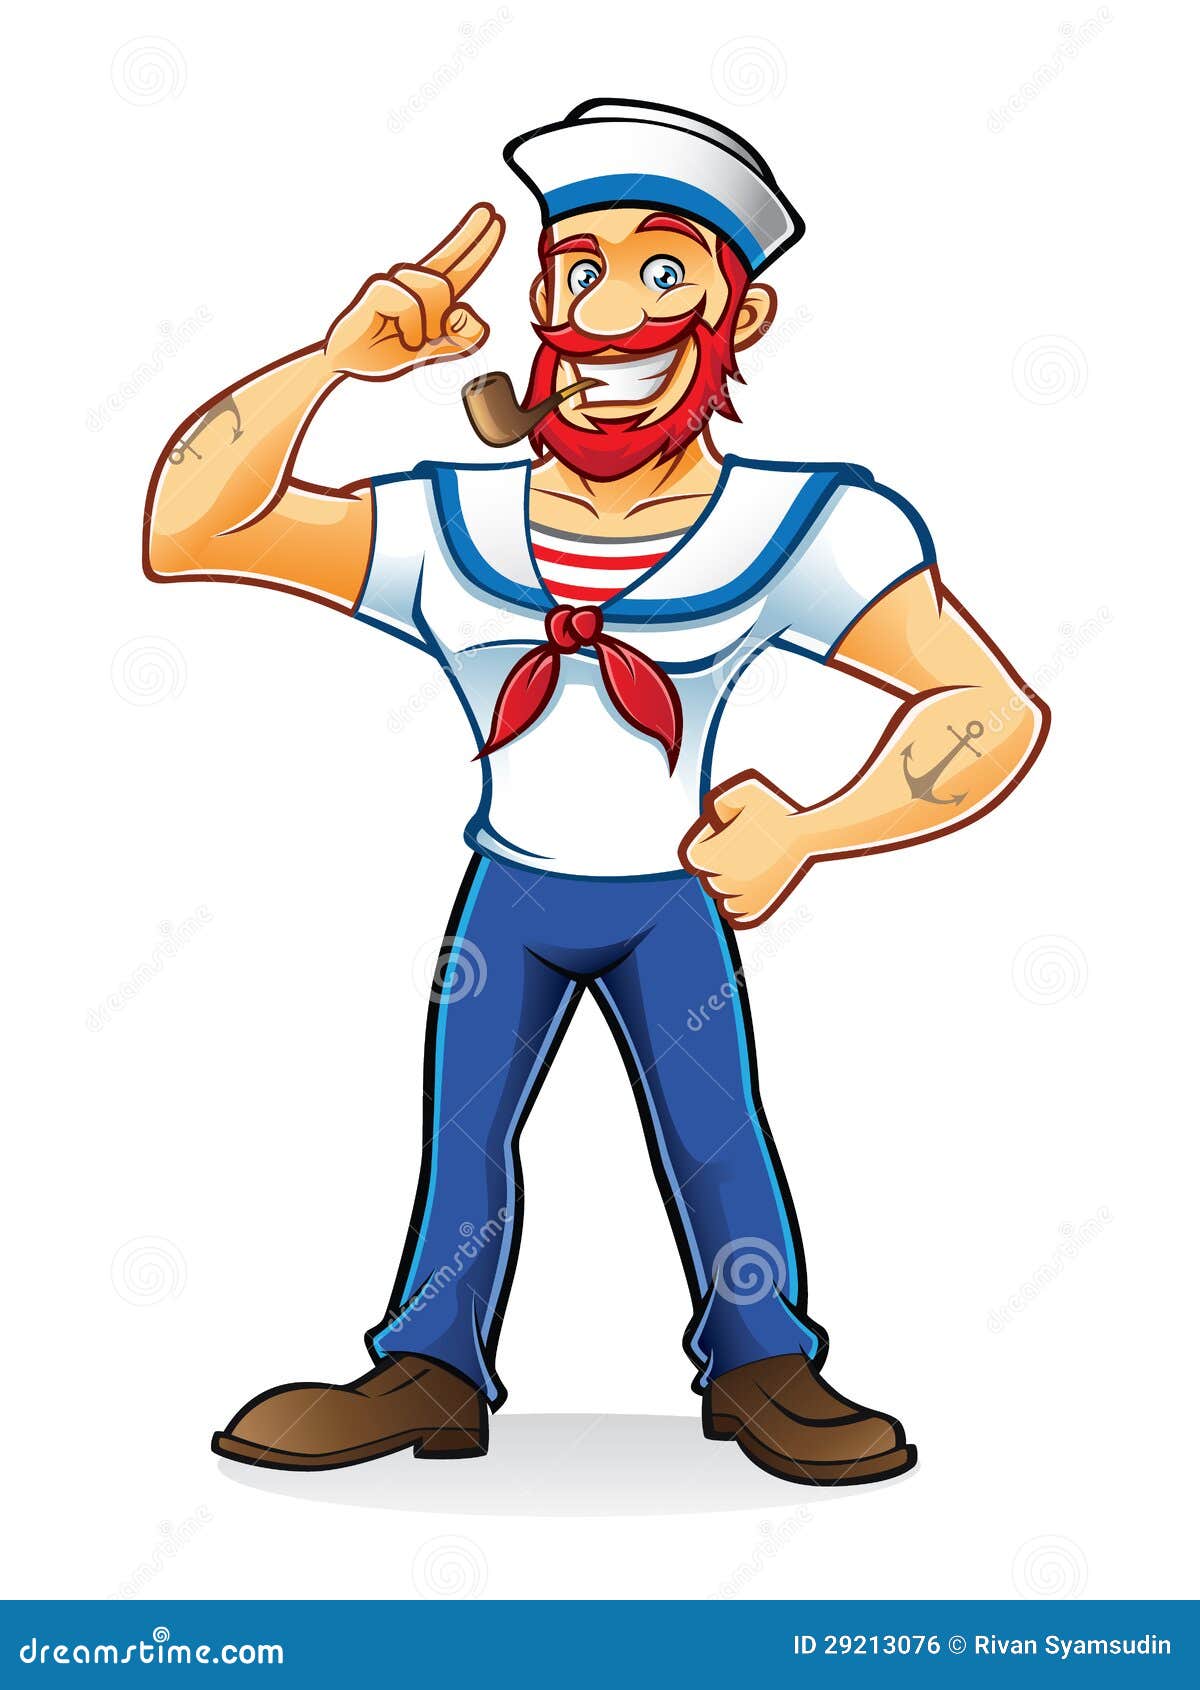 beard sailor